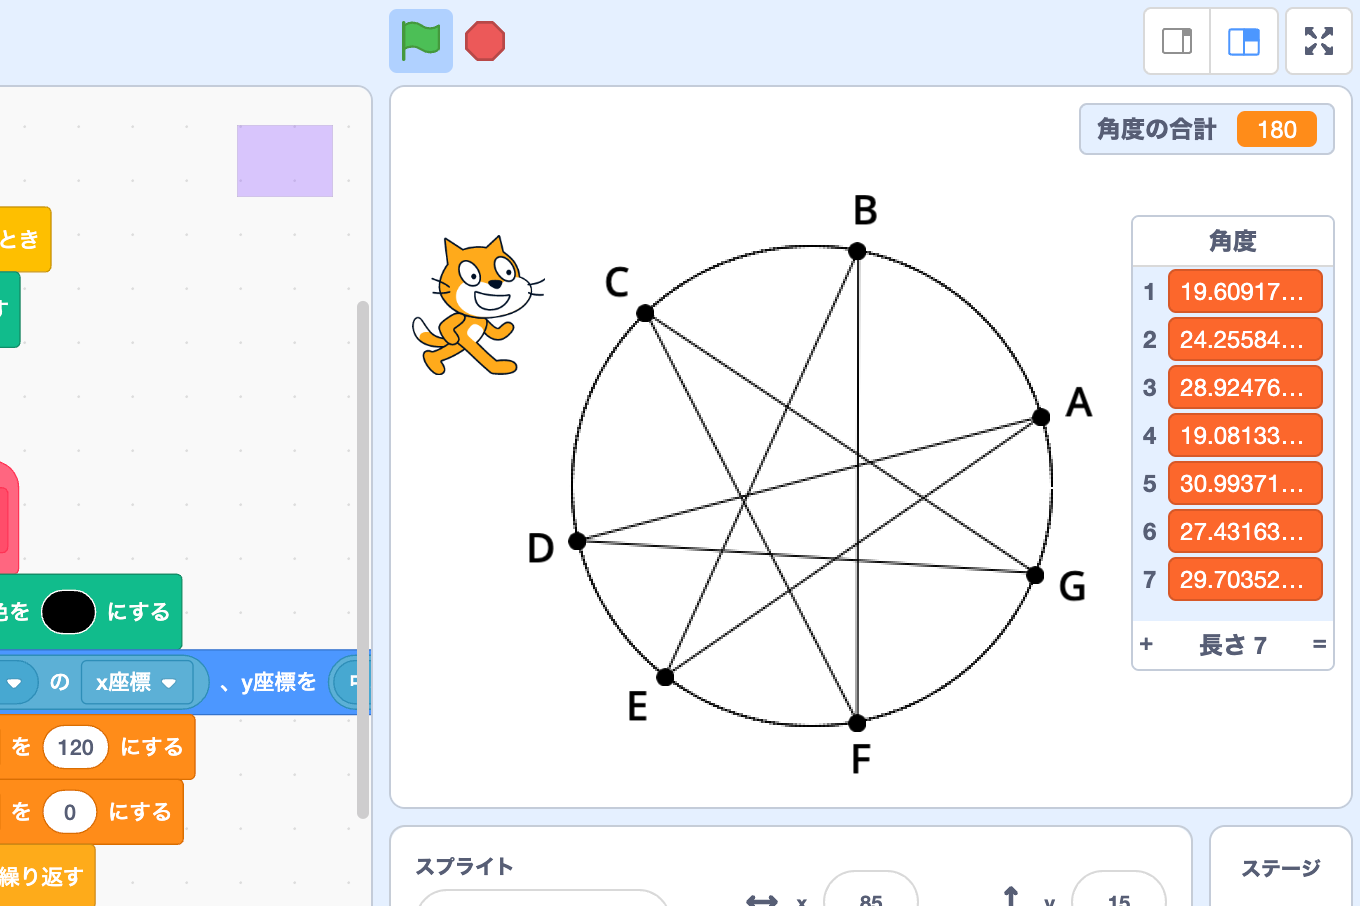 【既存の教科でプログラミング授業】中学3年生 数学「星形の角の和３」